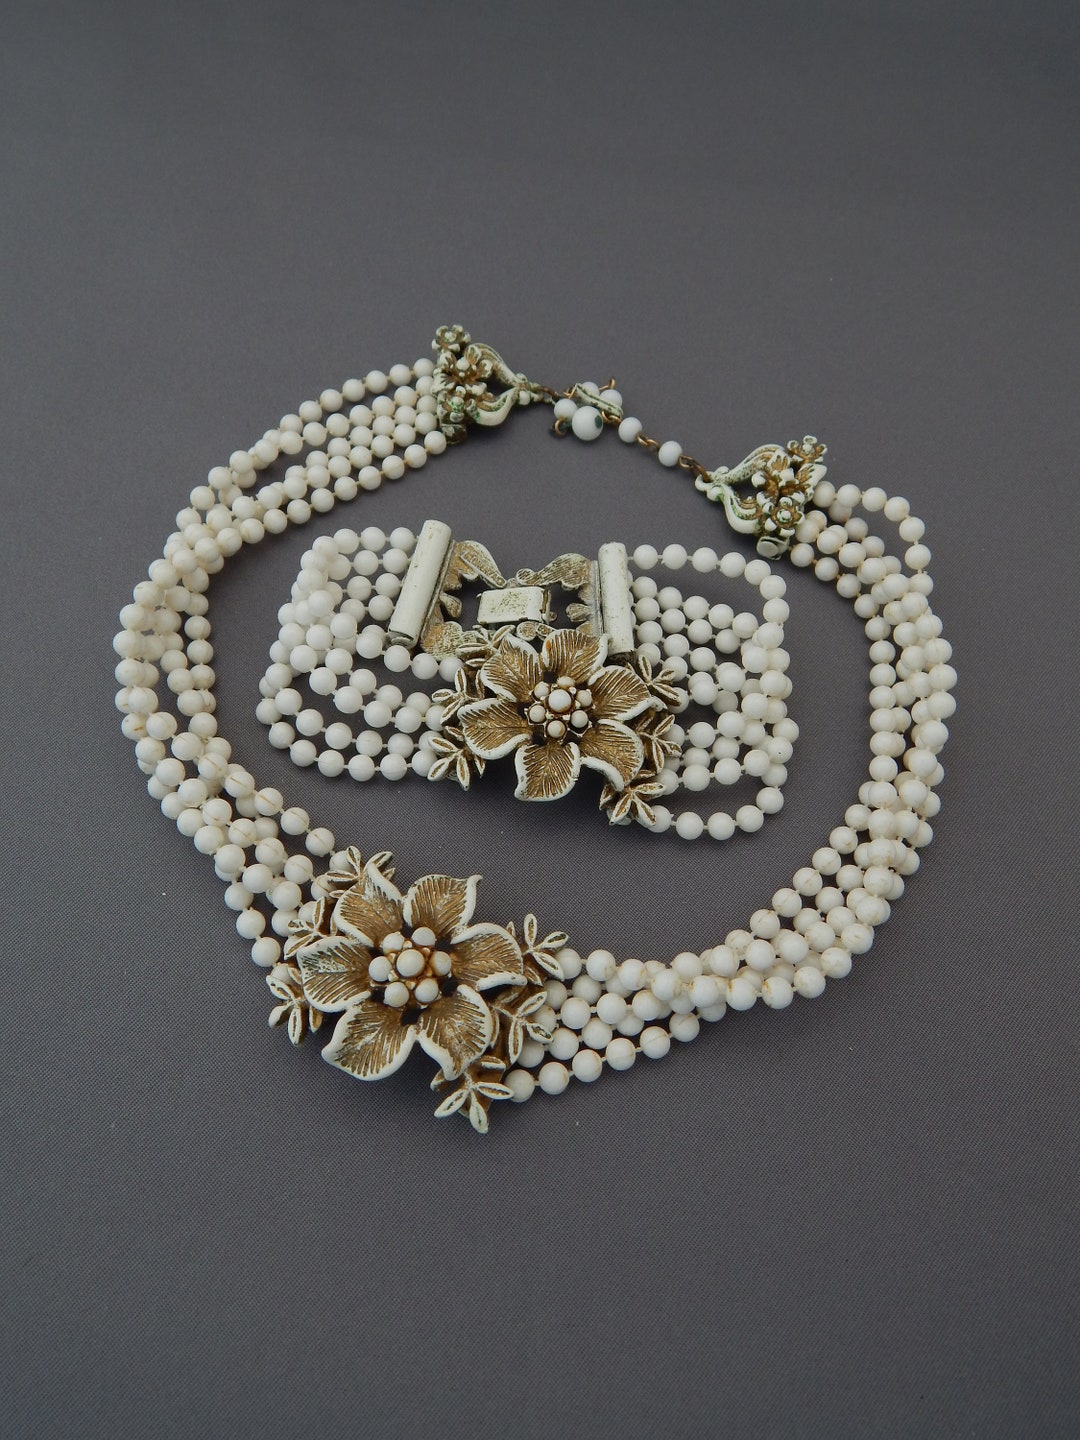 FLORENZA Necklace Bracelet White and Gold Demi Parure - Etsy